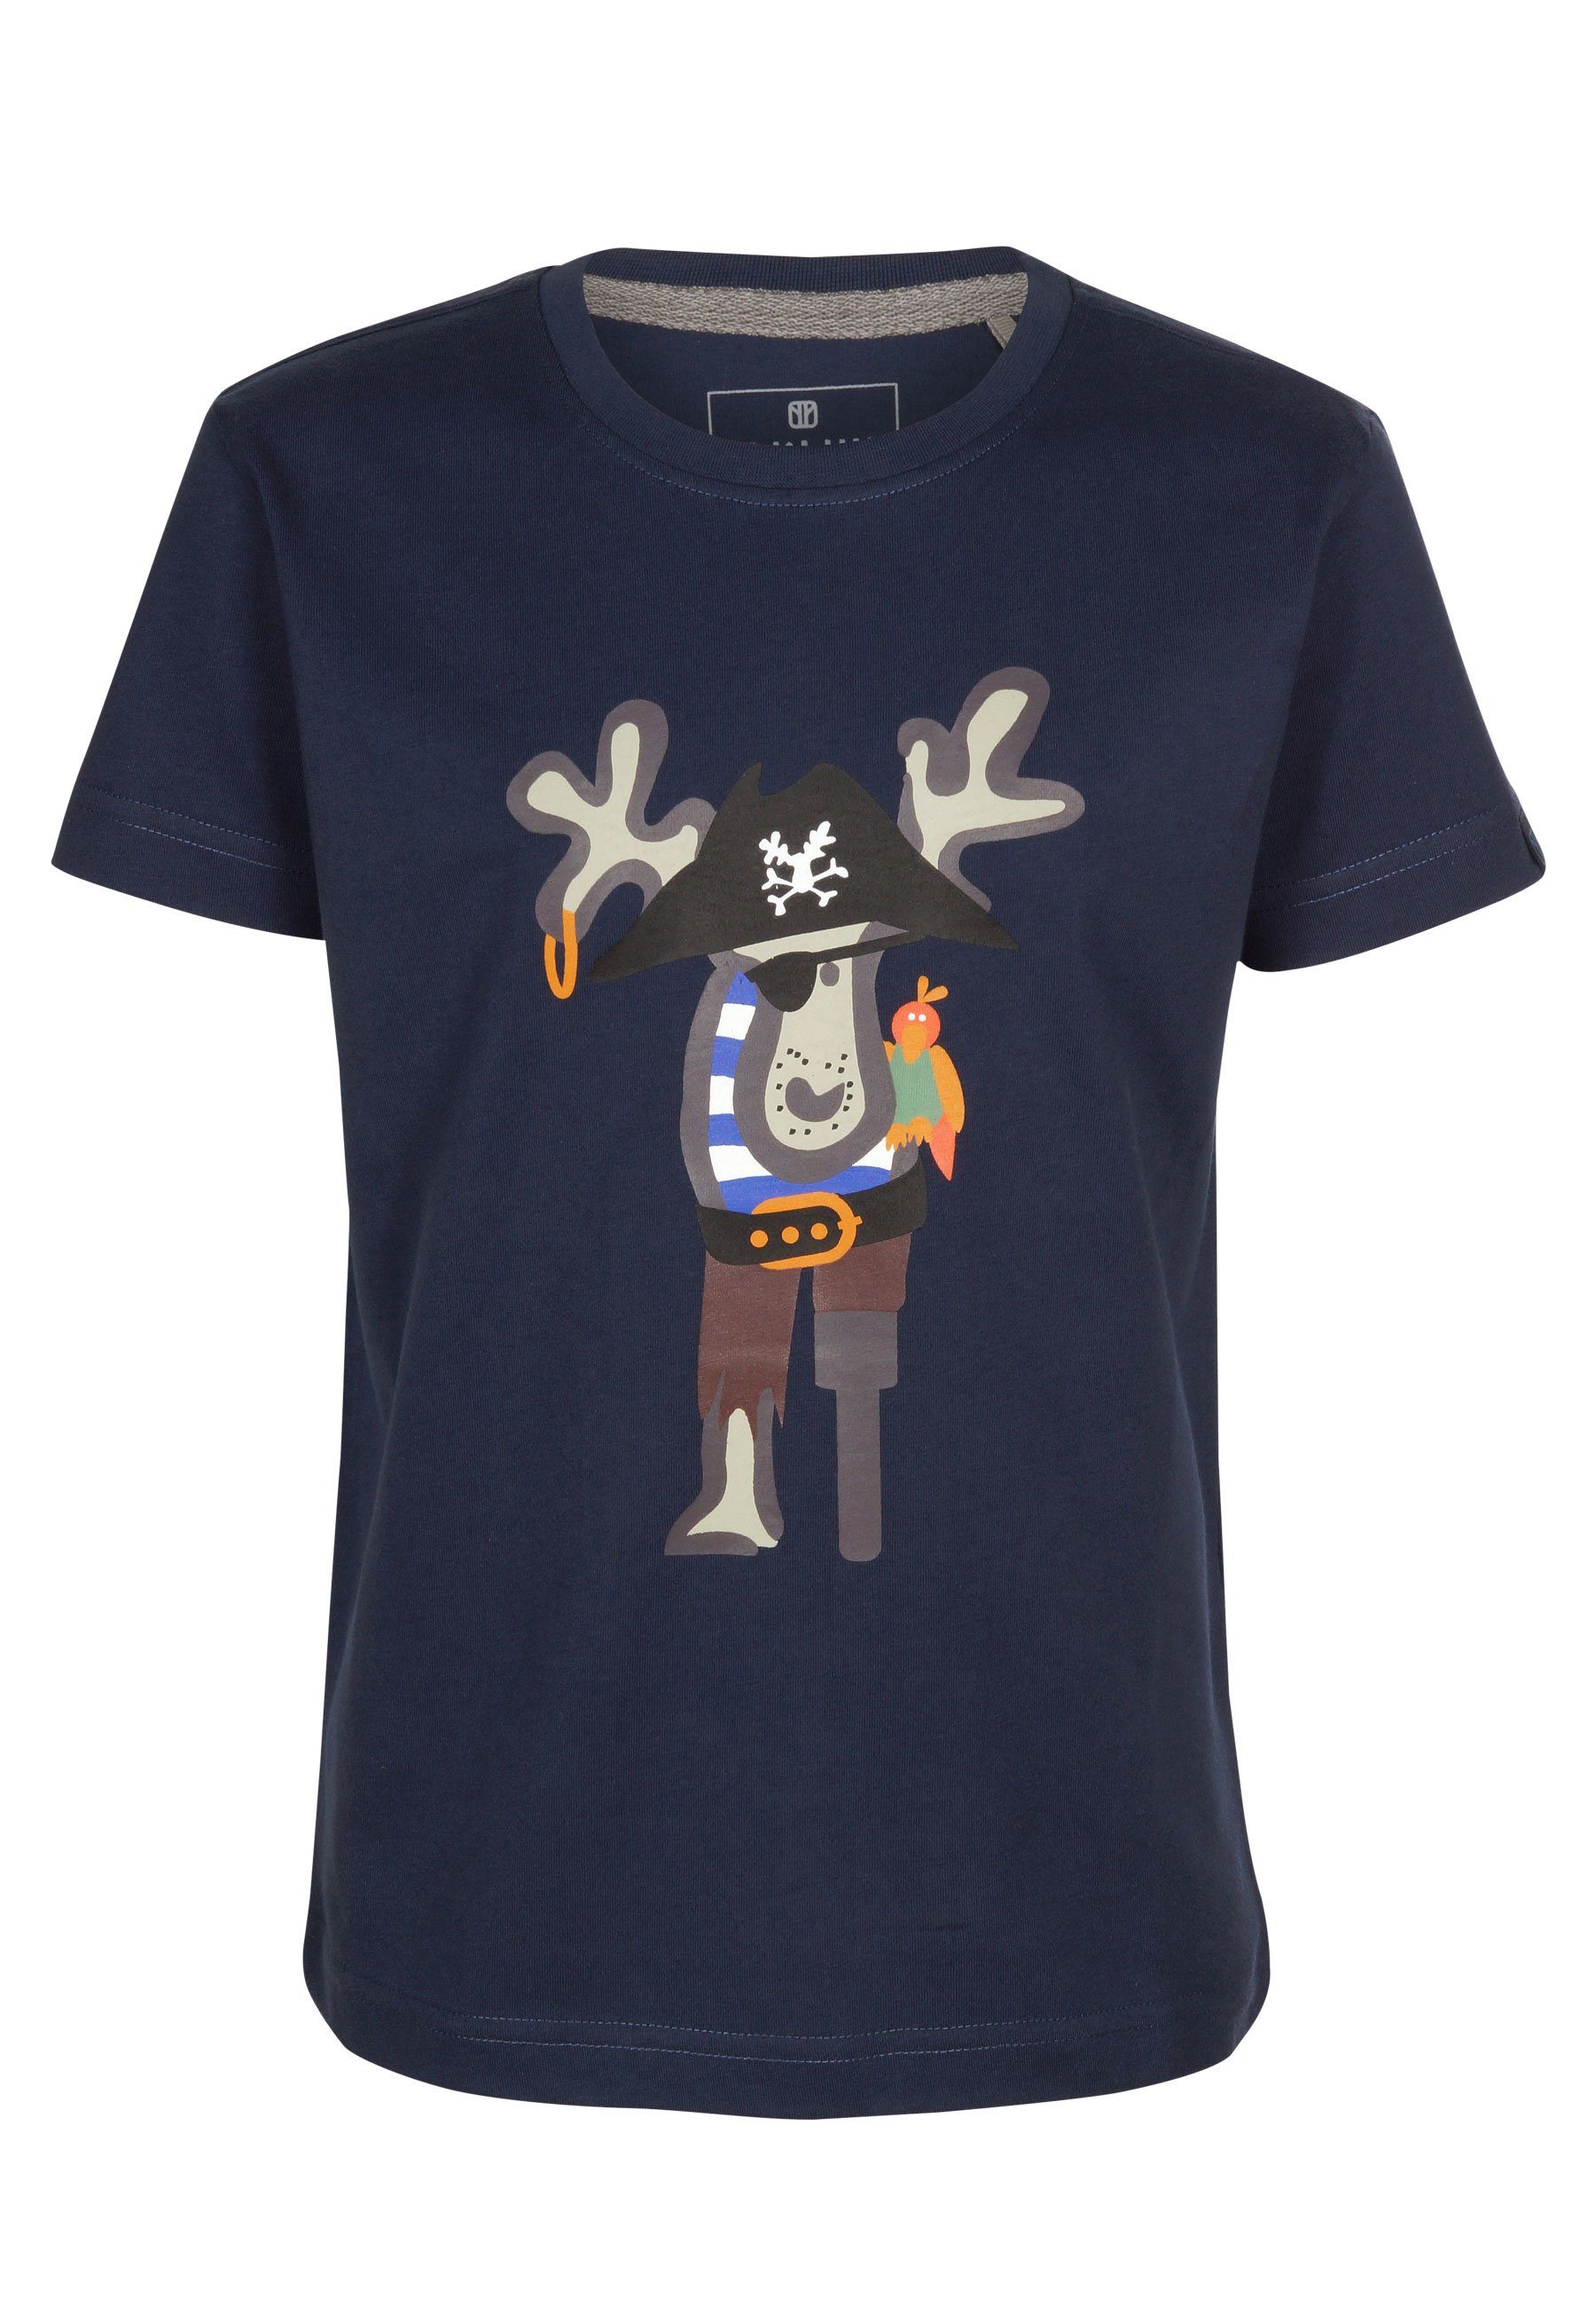 Brust Piraten Messerjockel Elkline T-Shirt Print Elch darkblue